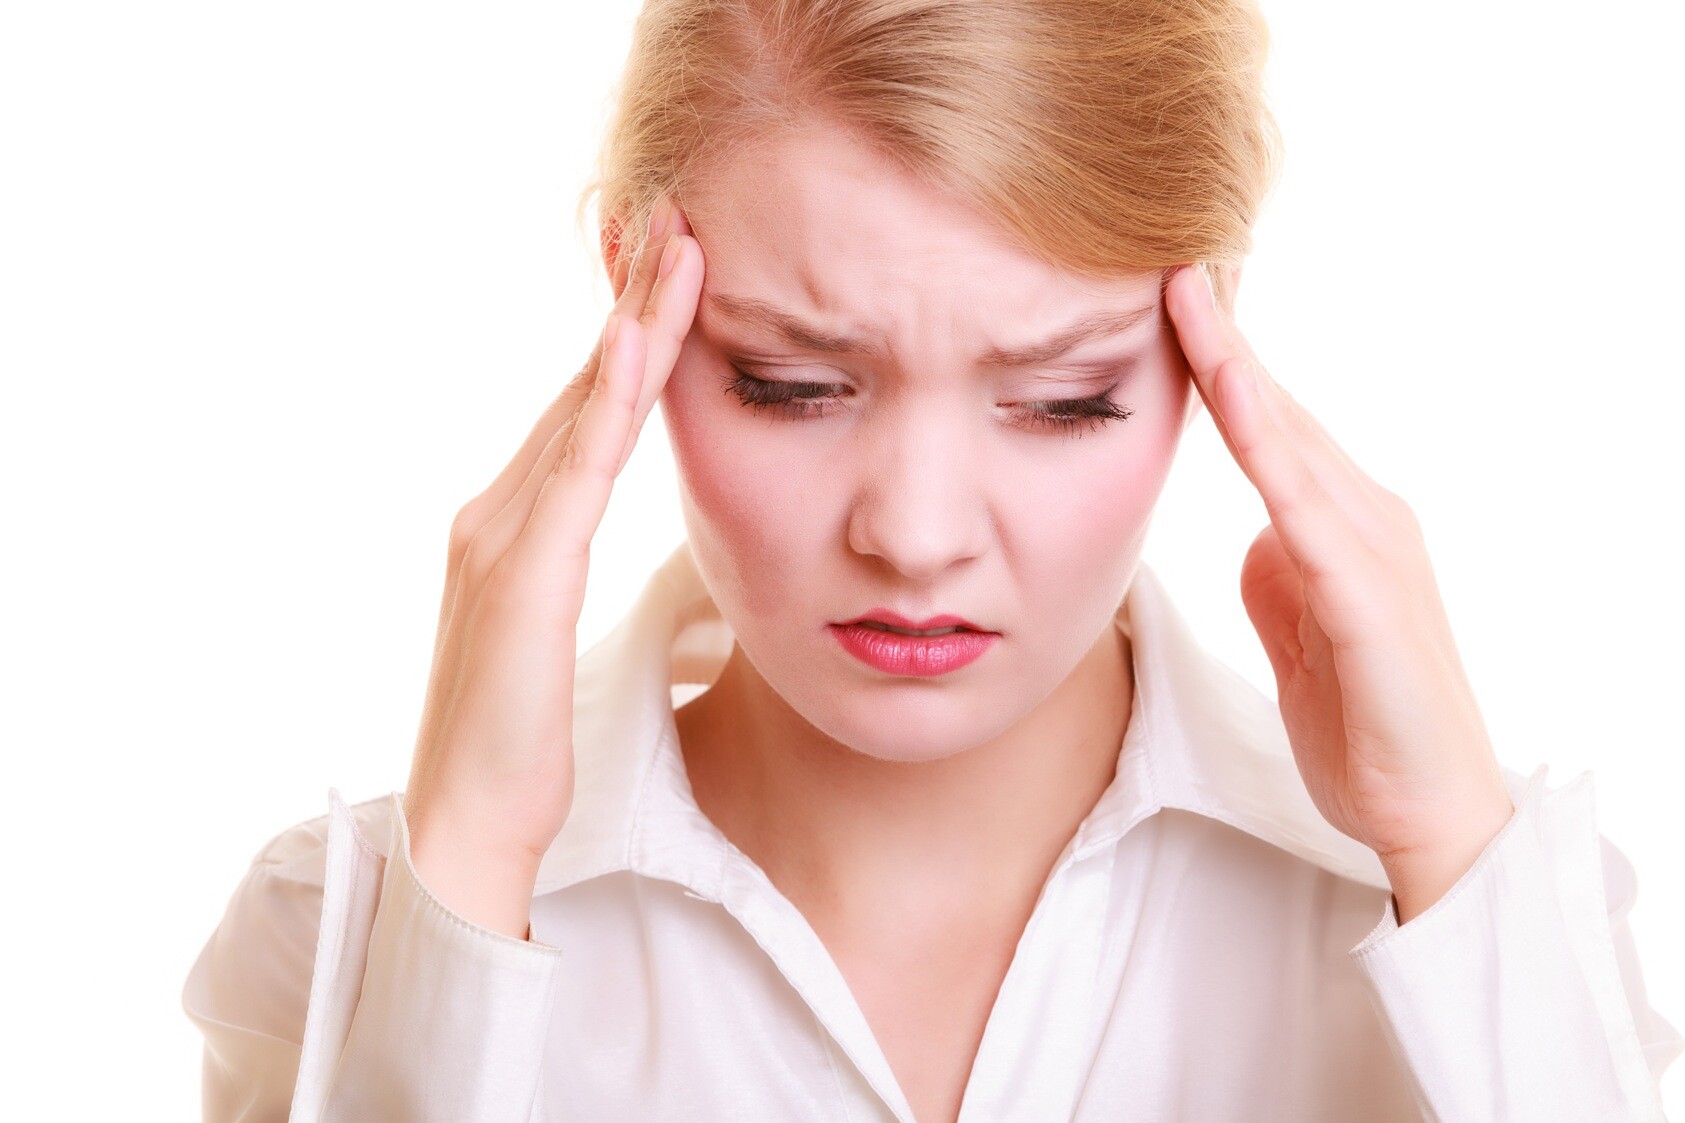 Migräneanfälle sind unangenehm und treten in der Regel sehr abrupt bzw. unerwartet auf. © Voyagerix / shutterstock.com